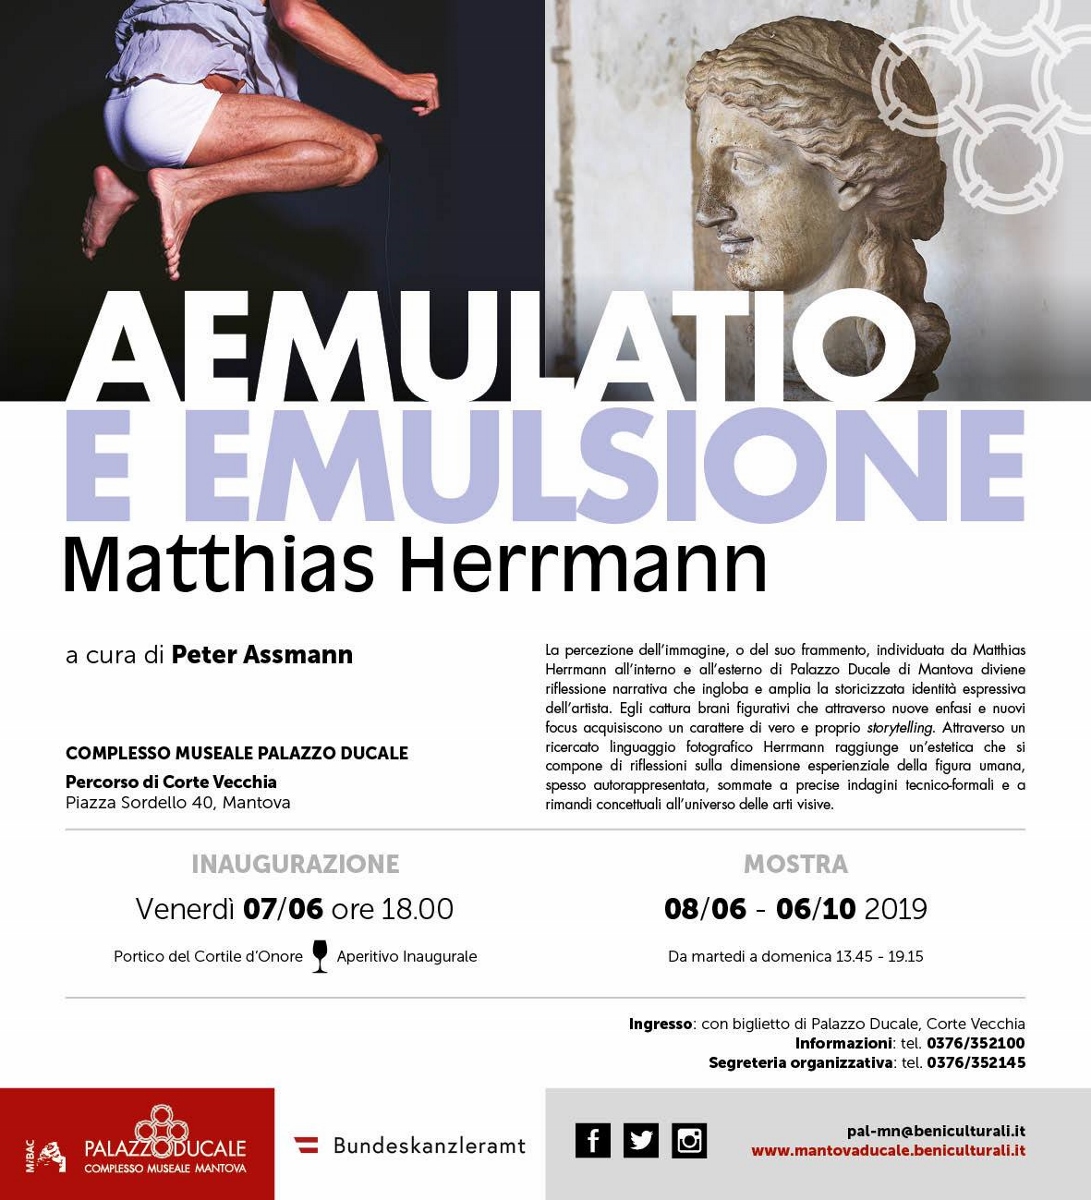 Matthias Herrmann - Aemulatio e emulsione